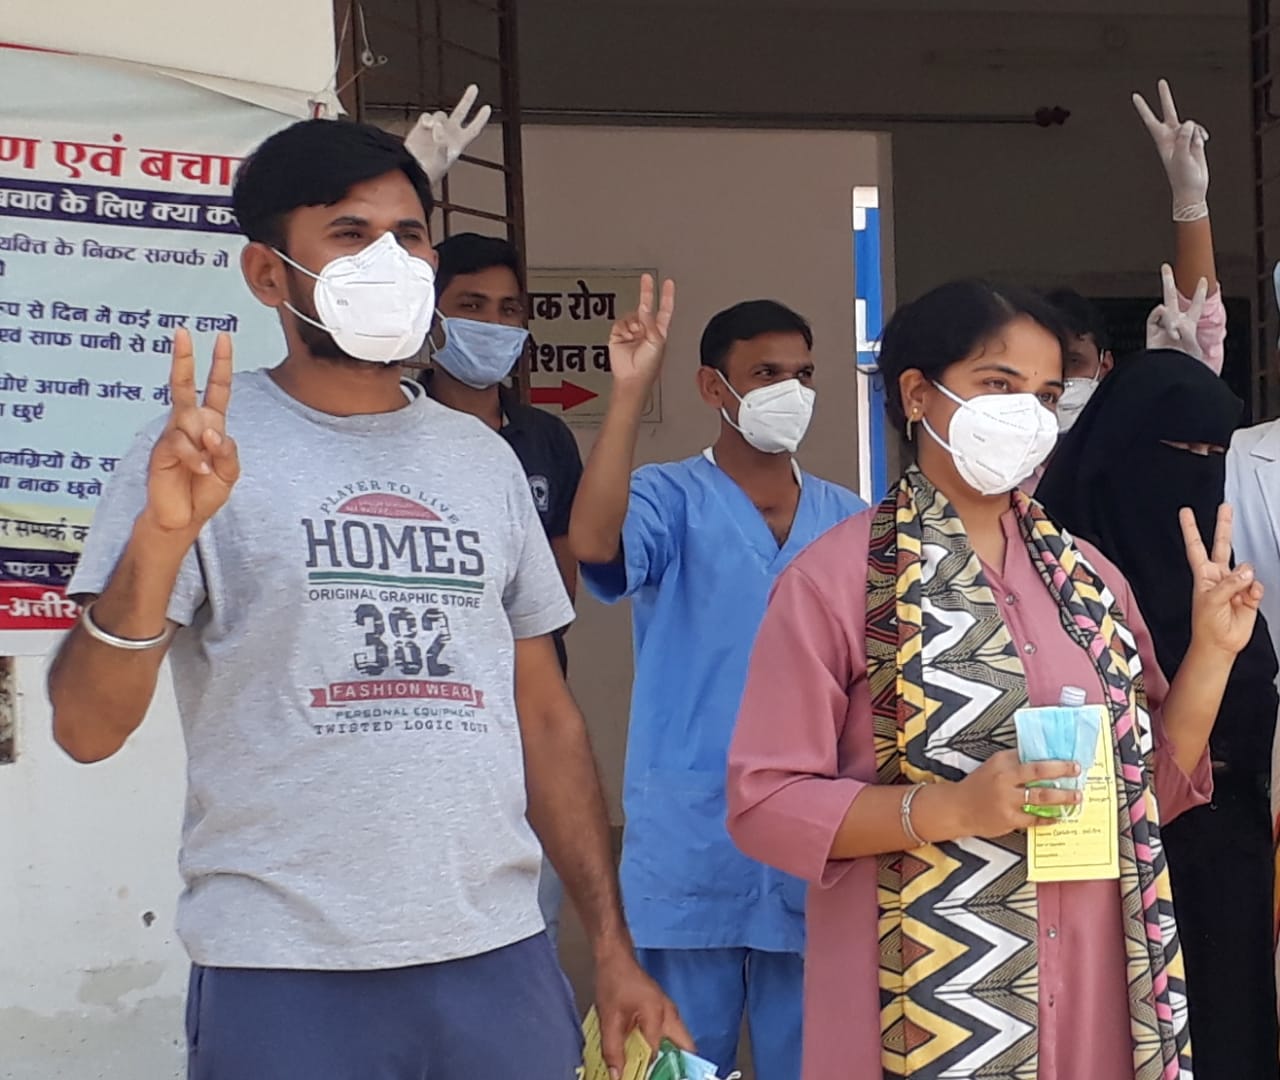 अस्पताल स्टॉफ ने हिम्मत दिलाई, डॉक्टरों ने मनोबल बढ़ाया, तो जीत ली कोरोना से जंग - श्री कुषाग्र पाल | New India Times